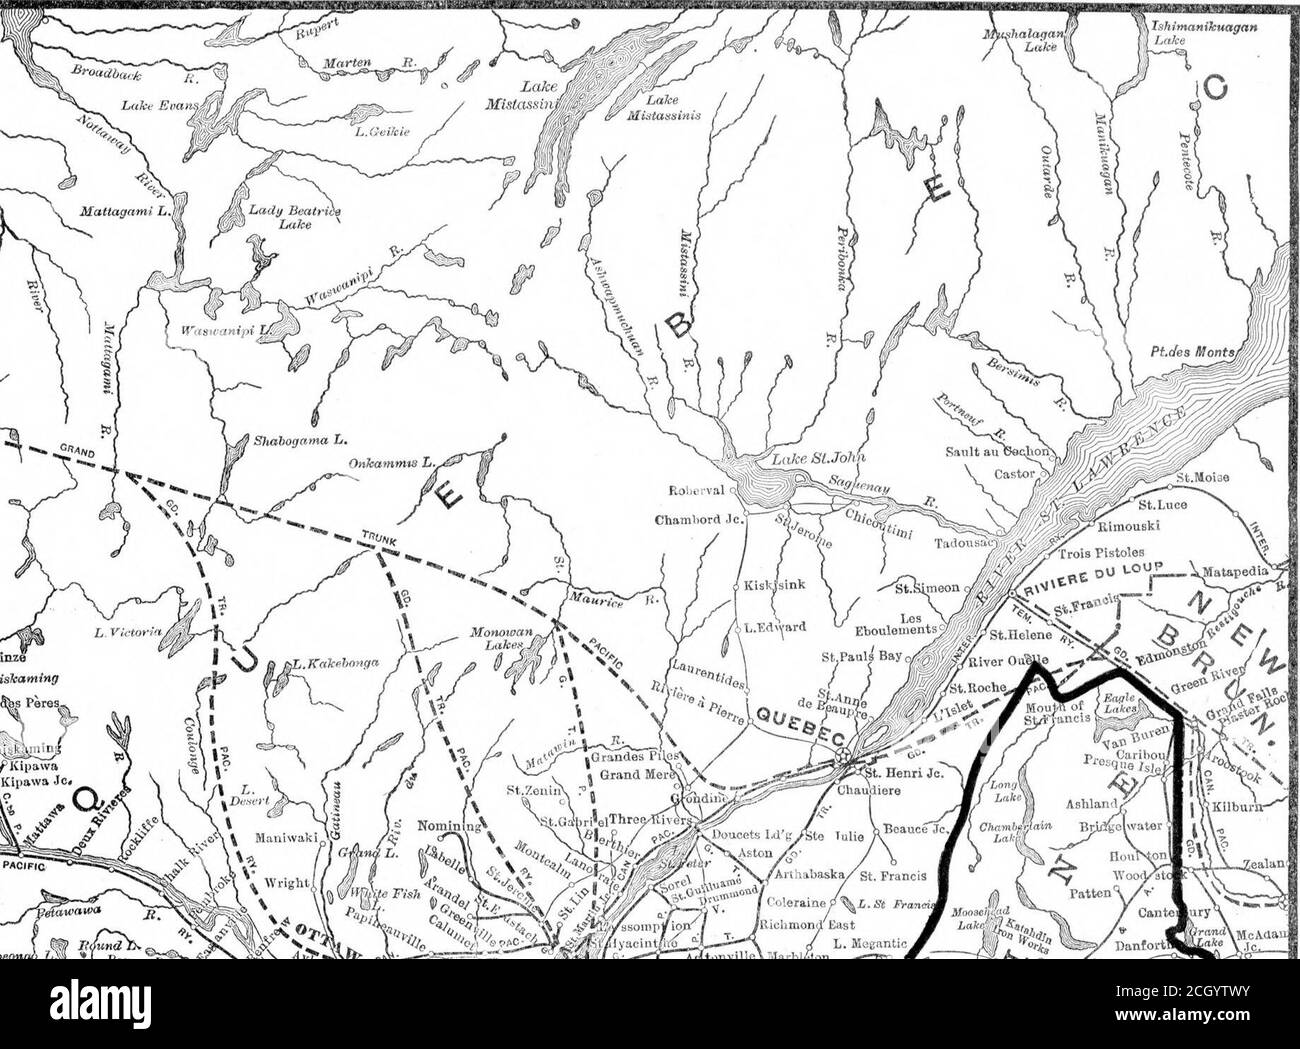 . Railway traffic maps : prepared for the course in inter-state commerce . 5* J Pack f.Opem. lidund k^ N^RB^^ftffA^^mJbart SMerbrooke ■VgooI mksliire •» MonscinV^^ ^jiTrnvHi/ille ■oPy^Ljnos] Y^^^^J -O Carrebasset -T 2;4jjii)o EIiTham Dover? V /.  ^^^  VH^j AlWnq. /i Princeton Kingsficli!  tJl Void Town Kfwcioy / ^y«i»aana sl..l,l«»Jo. . V/^ft/- «-^ &gt;^&gt; -^Bangor S,ilton-»J?-7jl f?°el l A«PoK&gt;g&gt;:afordi: lint  dV ui iDnTTTB^ -&gt;— T^KoriiOjira llratfora5k:;;jtoilJ&gt;l(^^^^n CiVsx^dstd&gt; Stock Photo